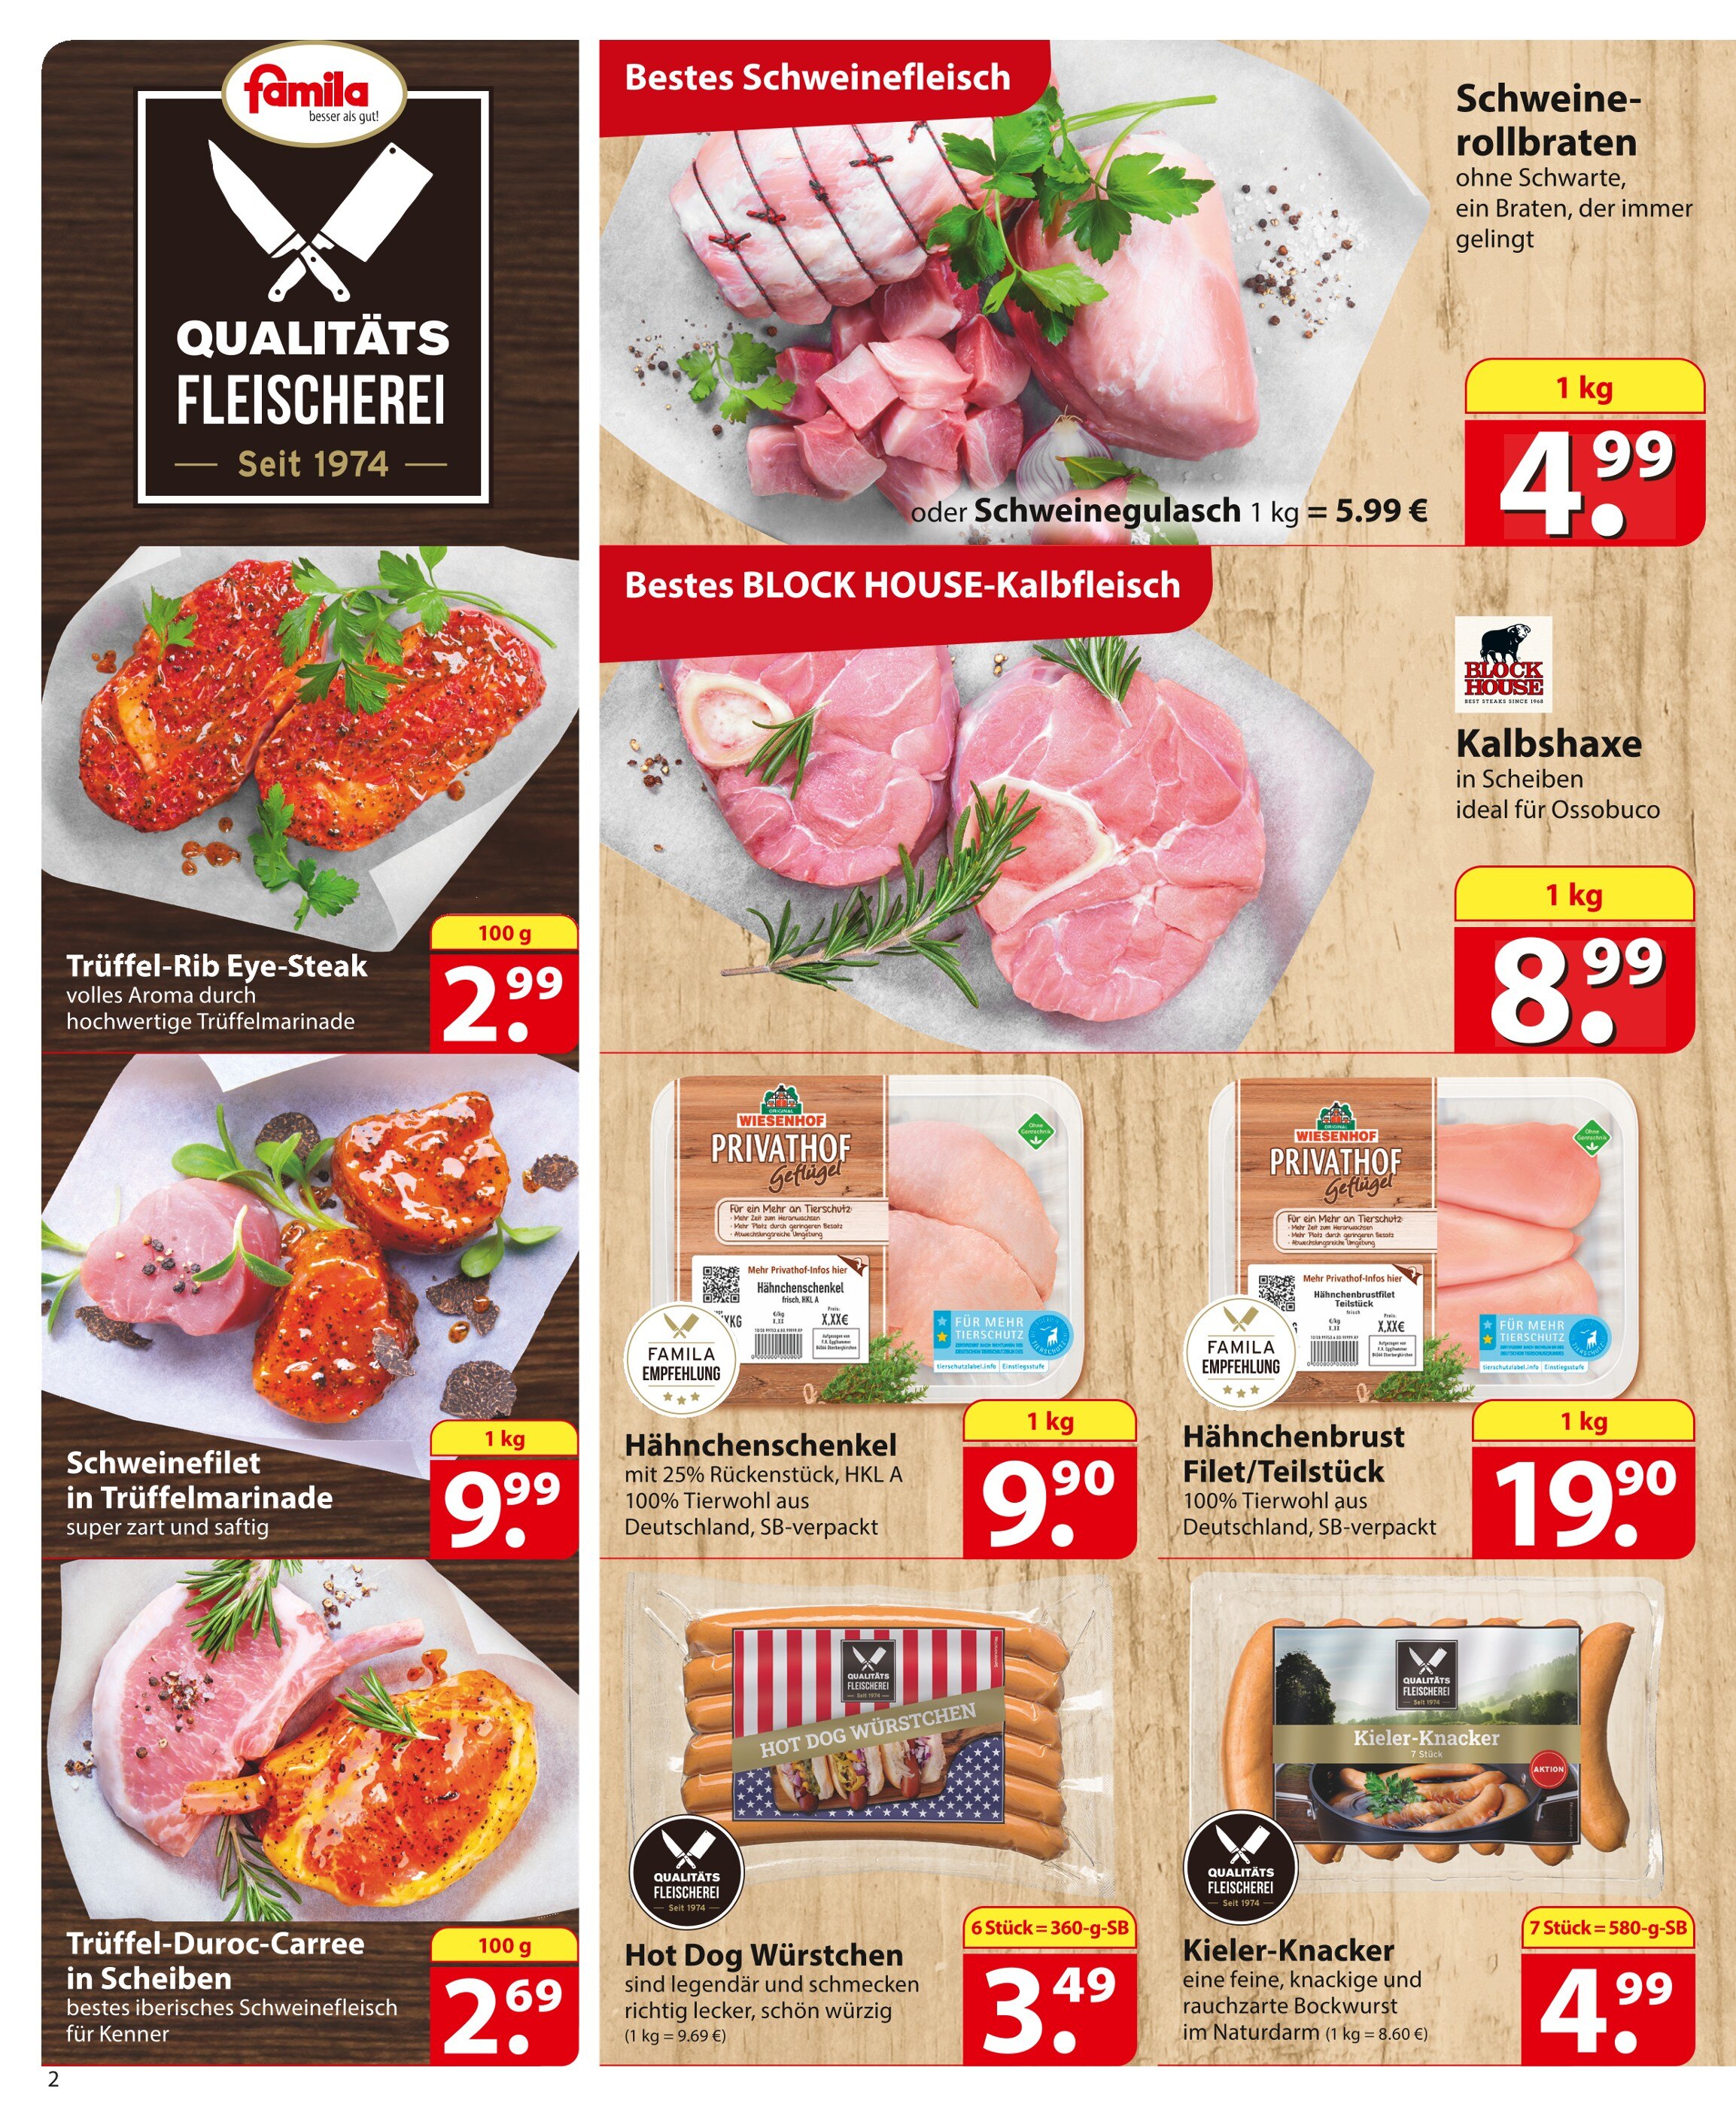 Steak kaufen in Langenhagen - günstige Angebote in Langenhagen